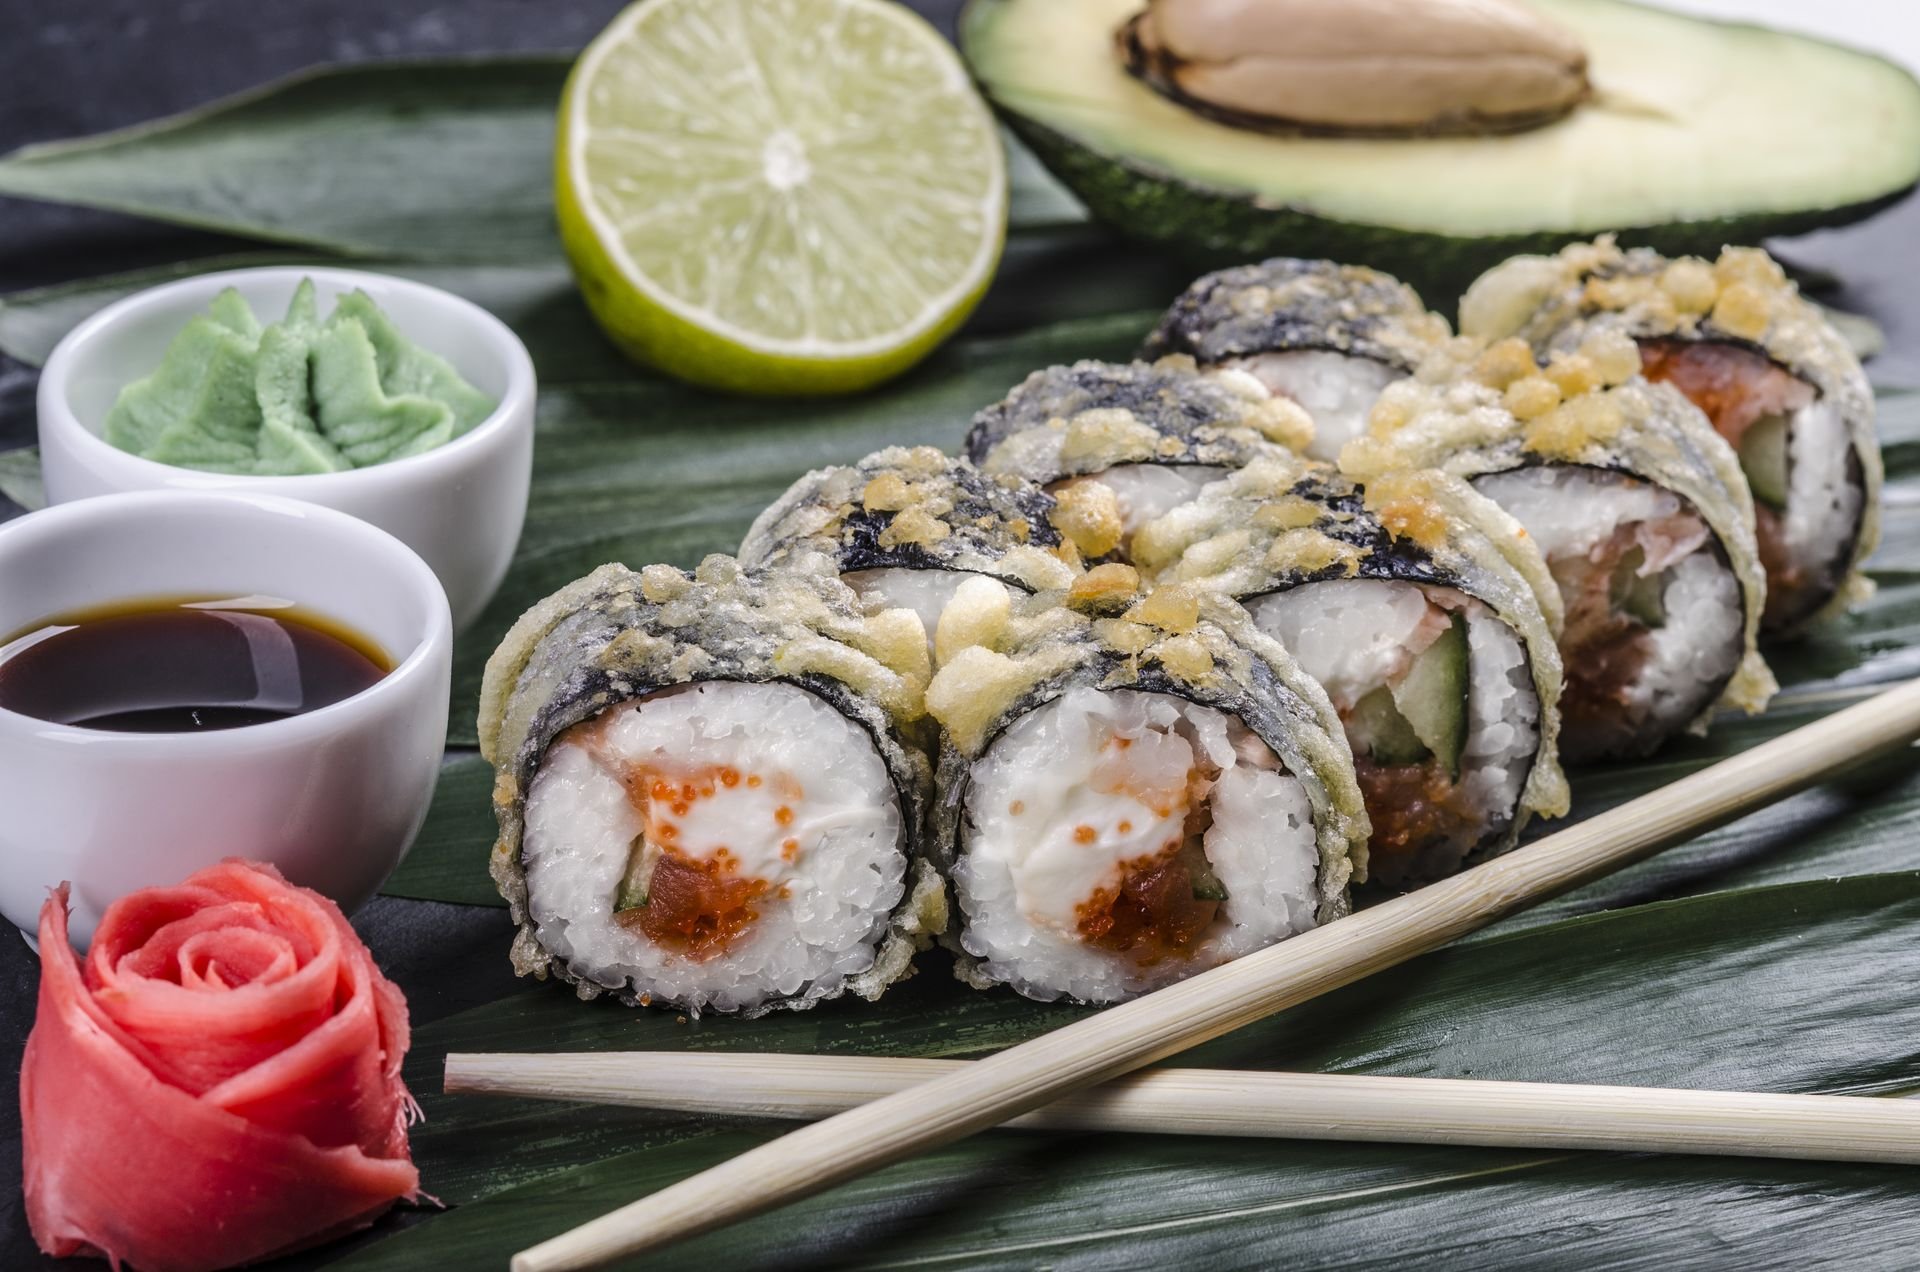 Японская кухня рулет из риса и тунца. Горячие роллы. Международный день суши. Суши запеченные в кляре. Закуски японской кухни.